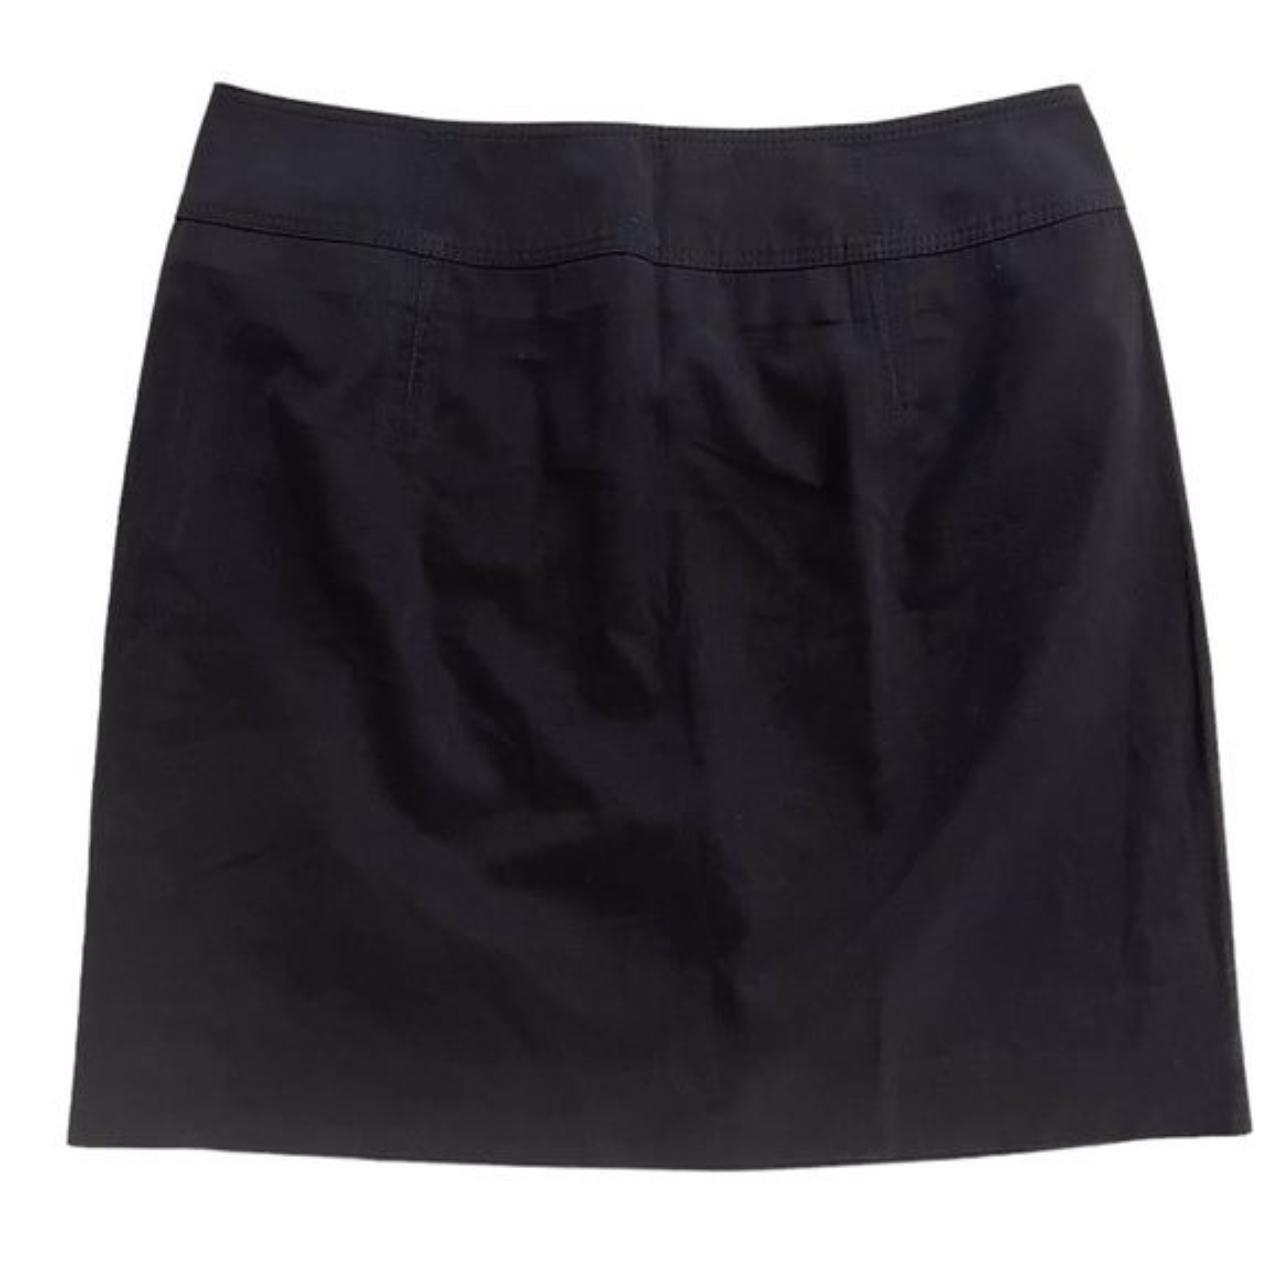 Hugo Boss Mini Skirt Black Mini Skirt Smooth cotton... - Depop